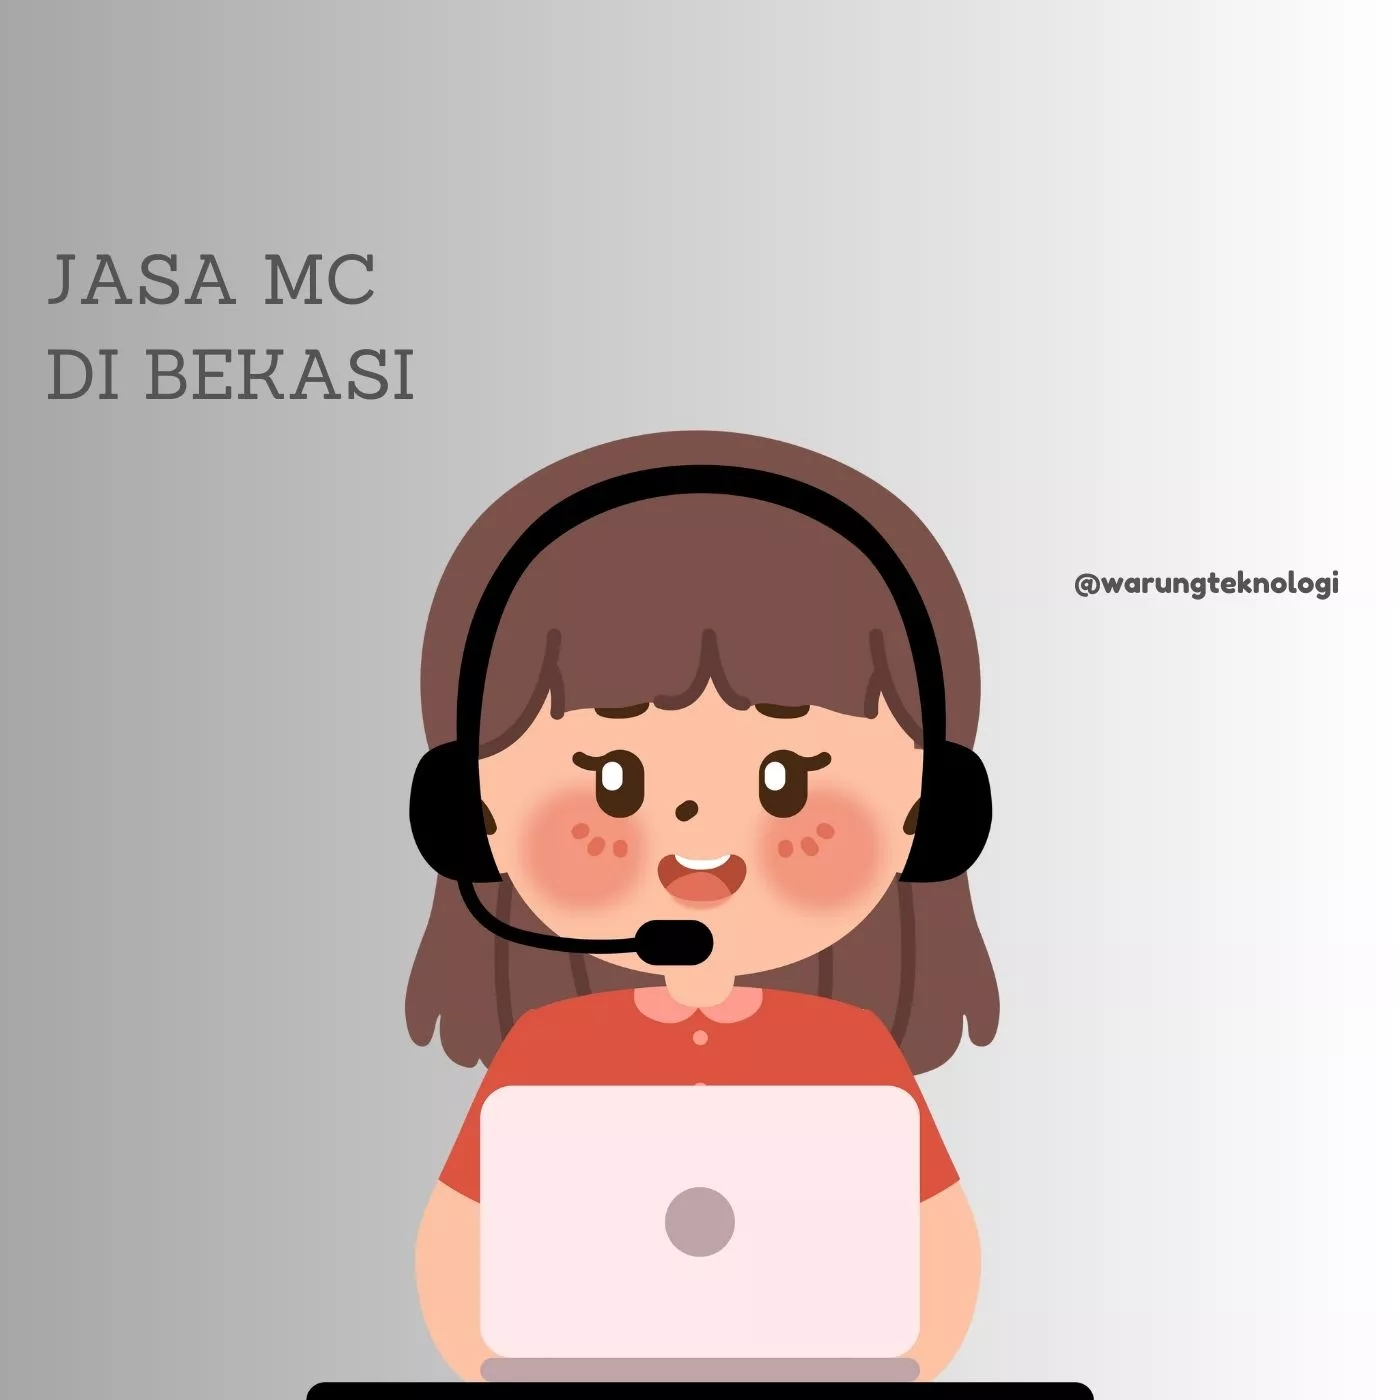 Jasa Mc Di Bekasi